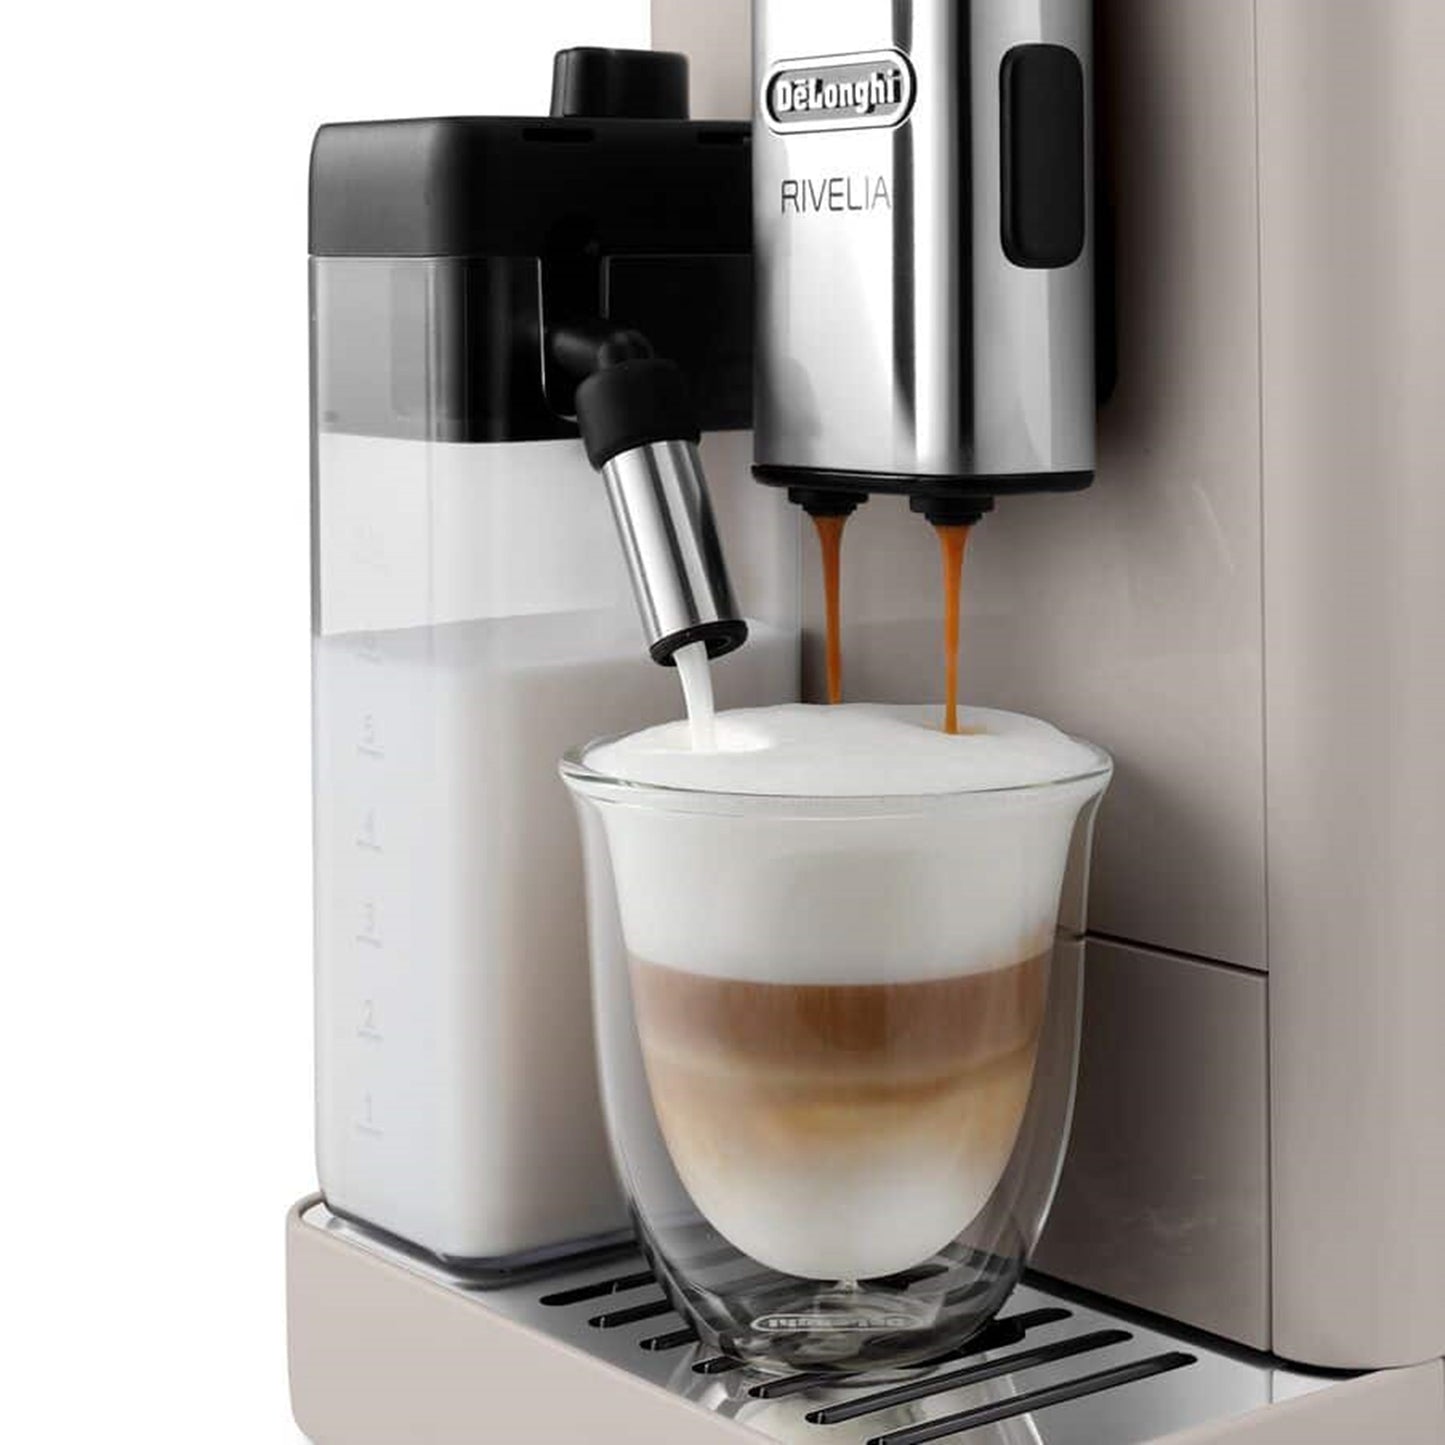 Macchina automatica per caffè in chicchi Rivelia EXAM440.55.G